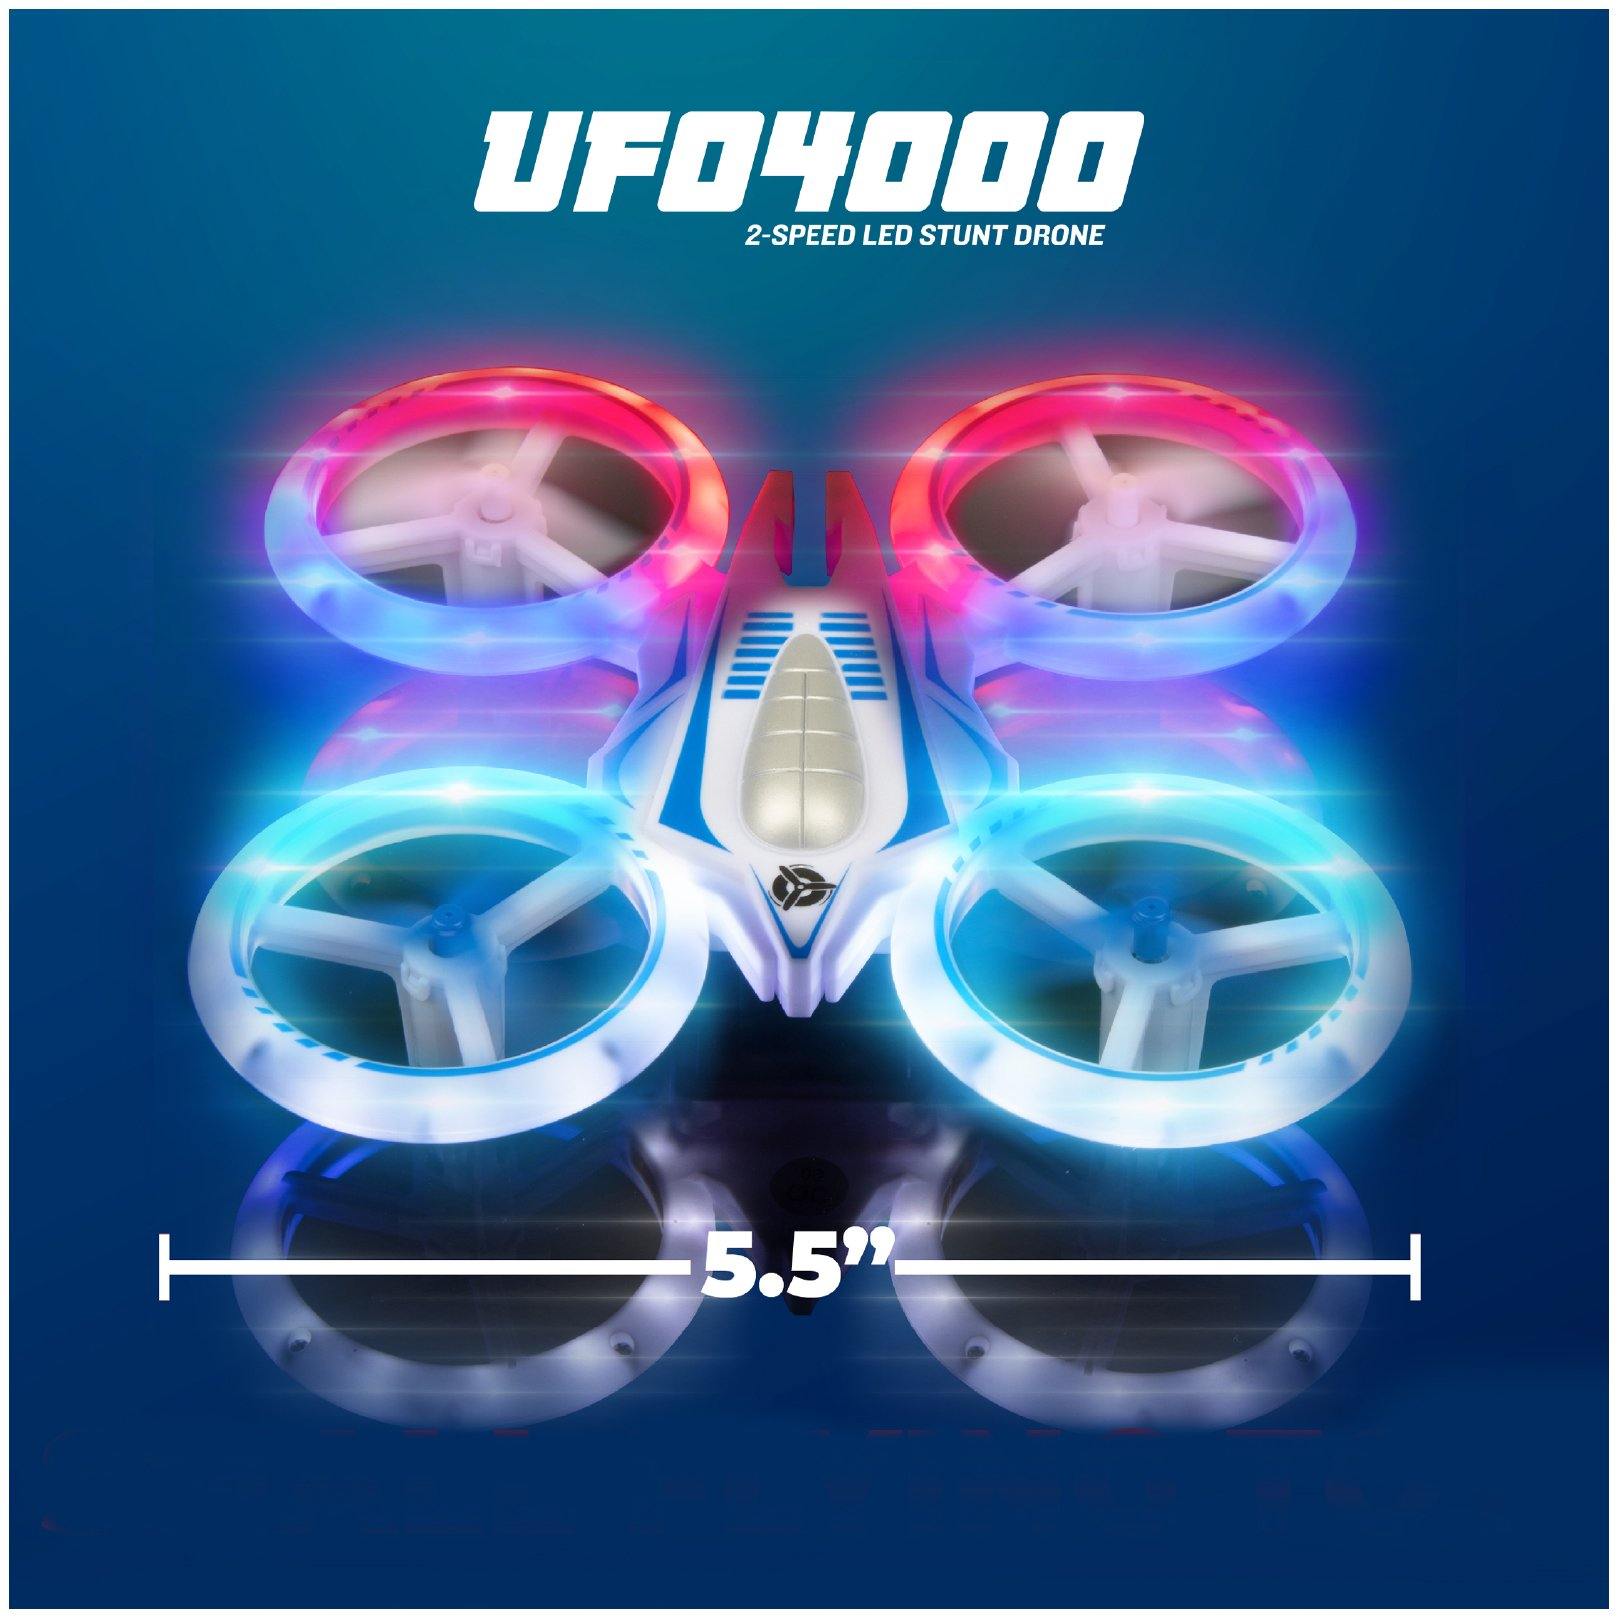 UFO 4000 - USA Toyz